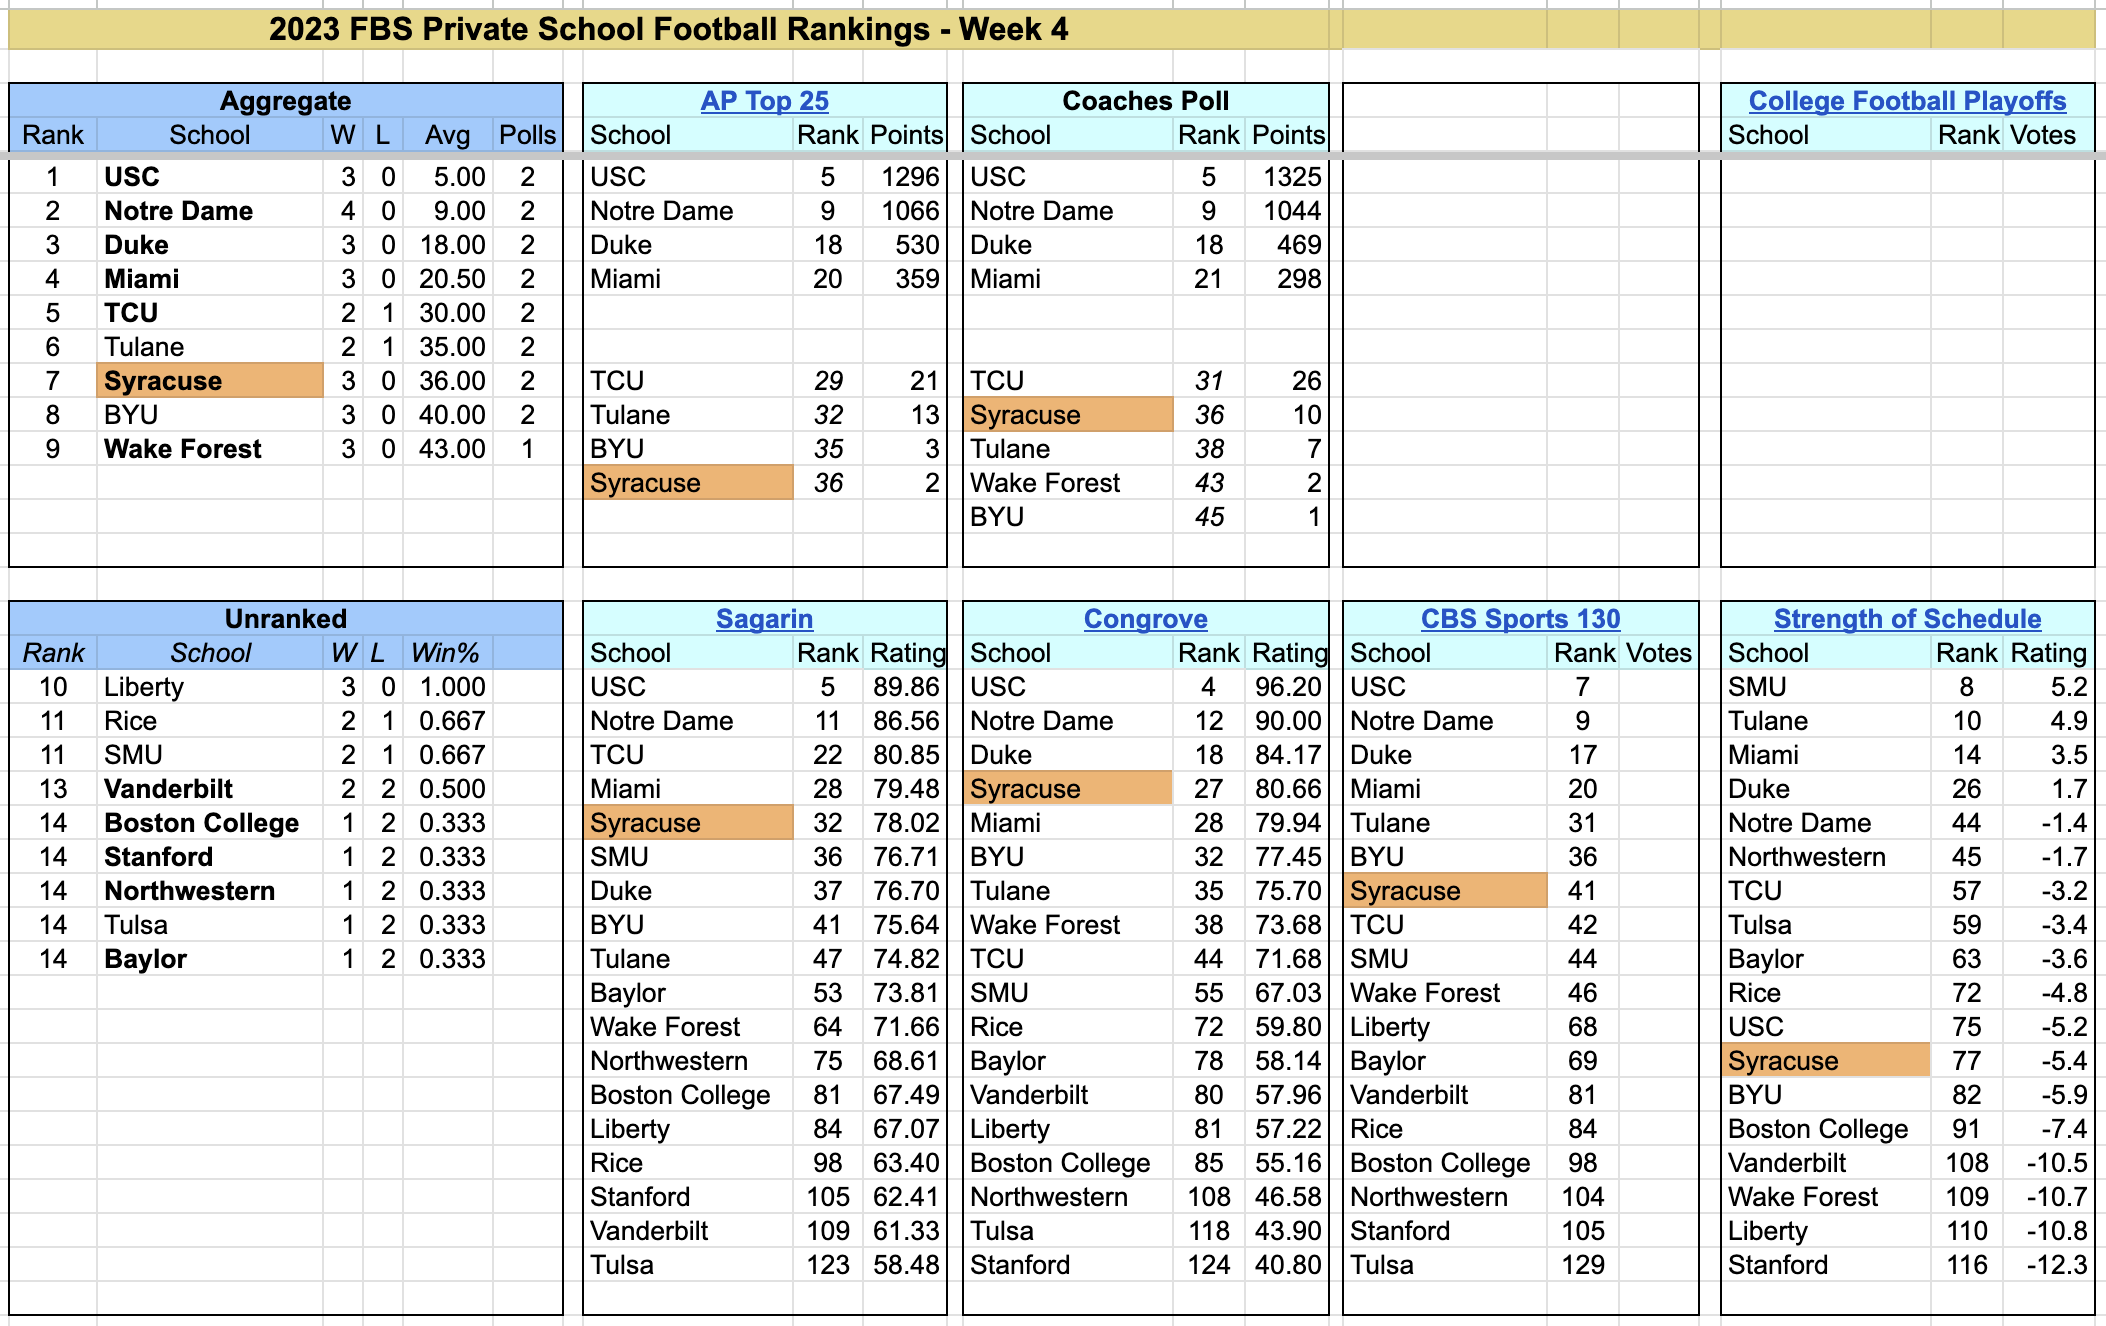 2023-FBS-PrivateSchoolFootballRankings-Week4-new.png